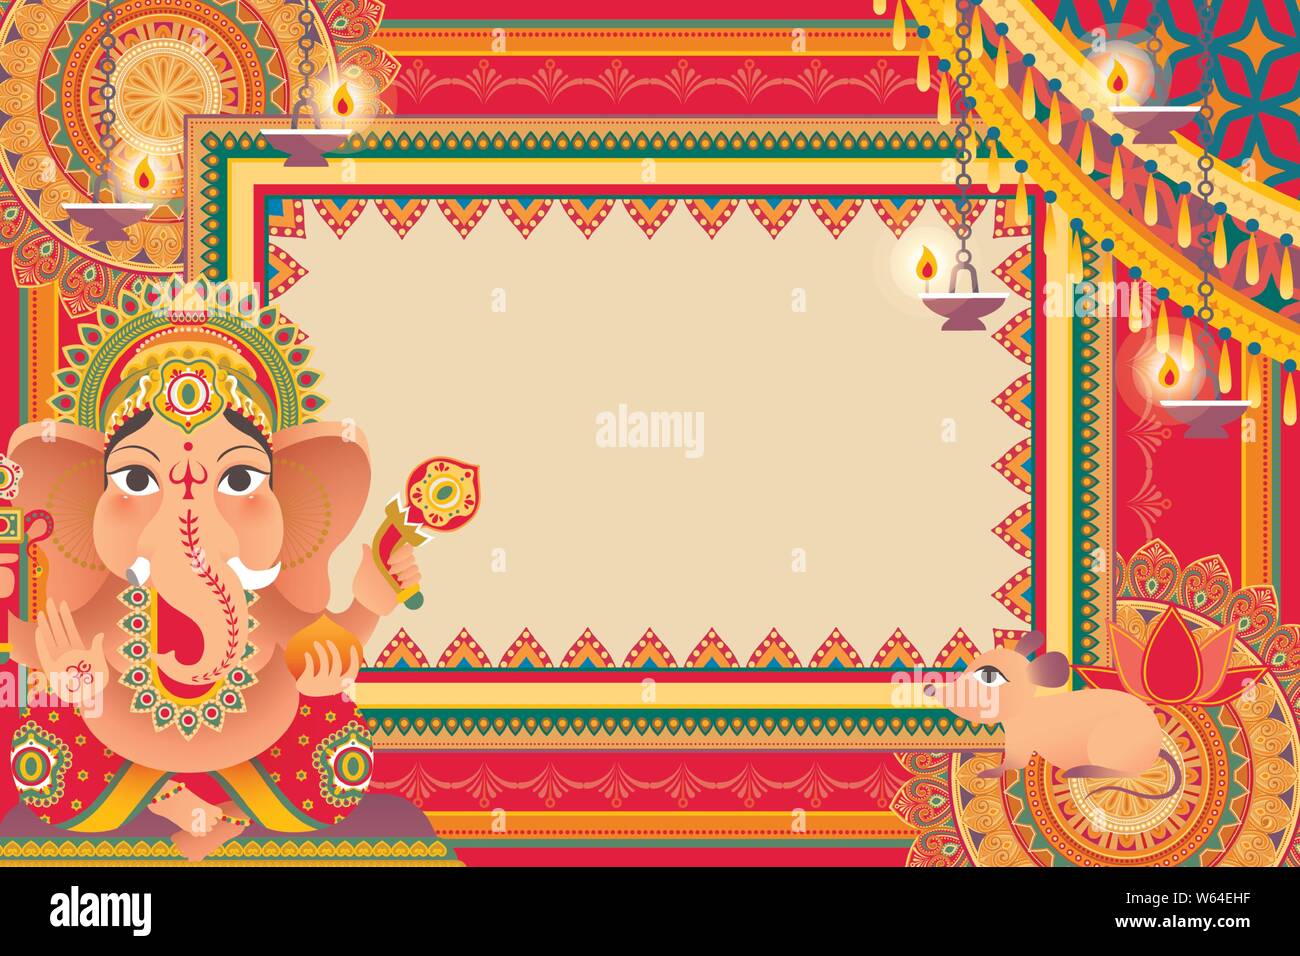 Gorgeous Ganesh Chaturthi festival background design with Hindu god Ganesha  Stock Vector Image & Art - Alamy